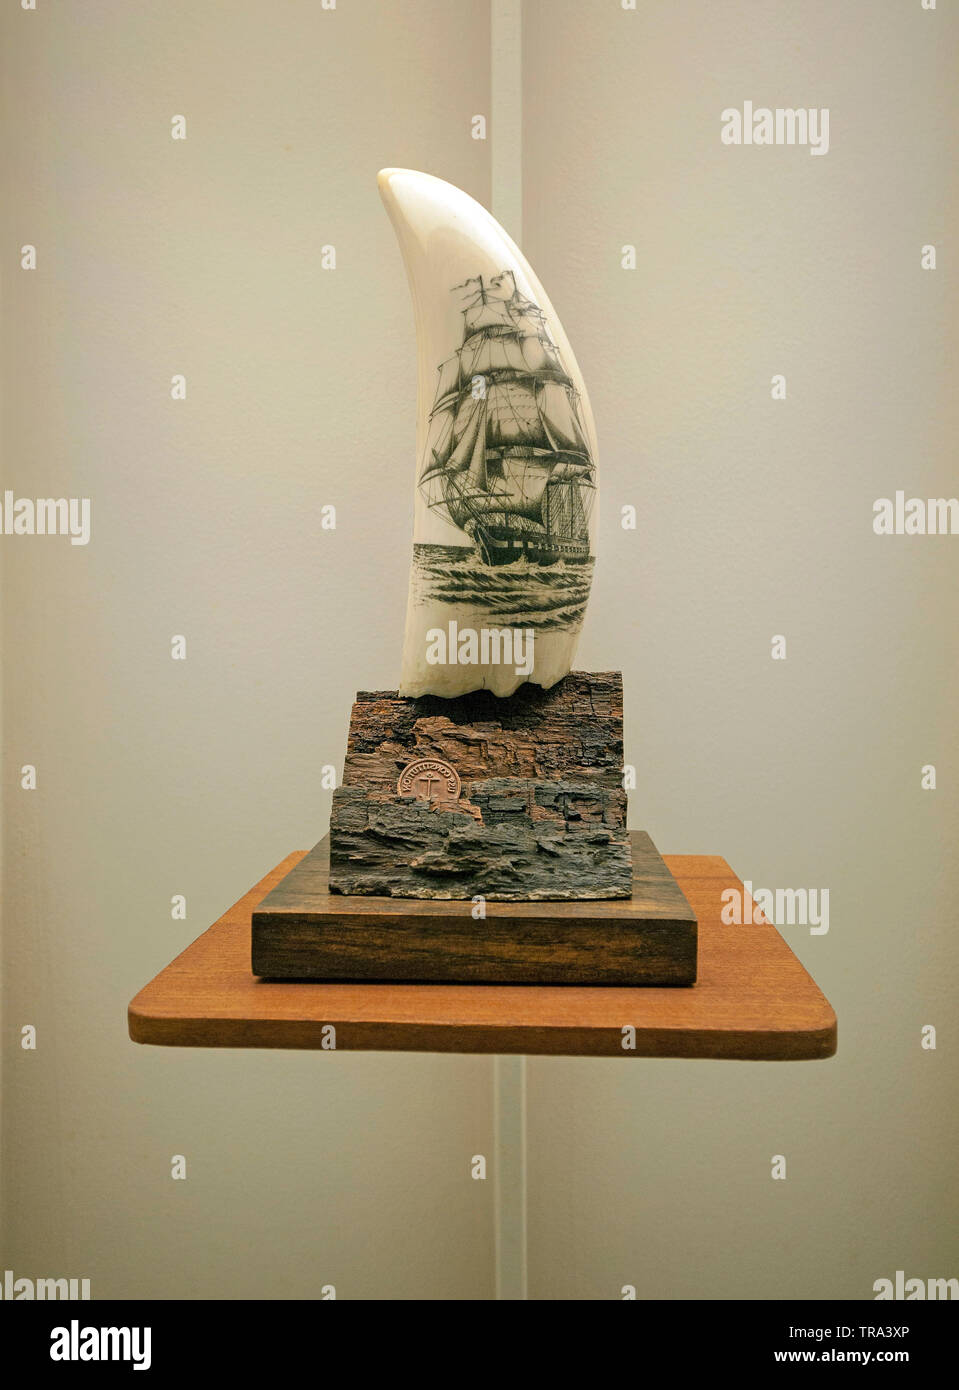 Srimshaw, hanicraft avec sculpture sur ivoire astucieuse dents de cachalots, de l'industrie baleinière, Musée Horta, Açores, Portugal Banque D'Images